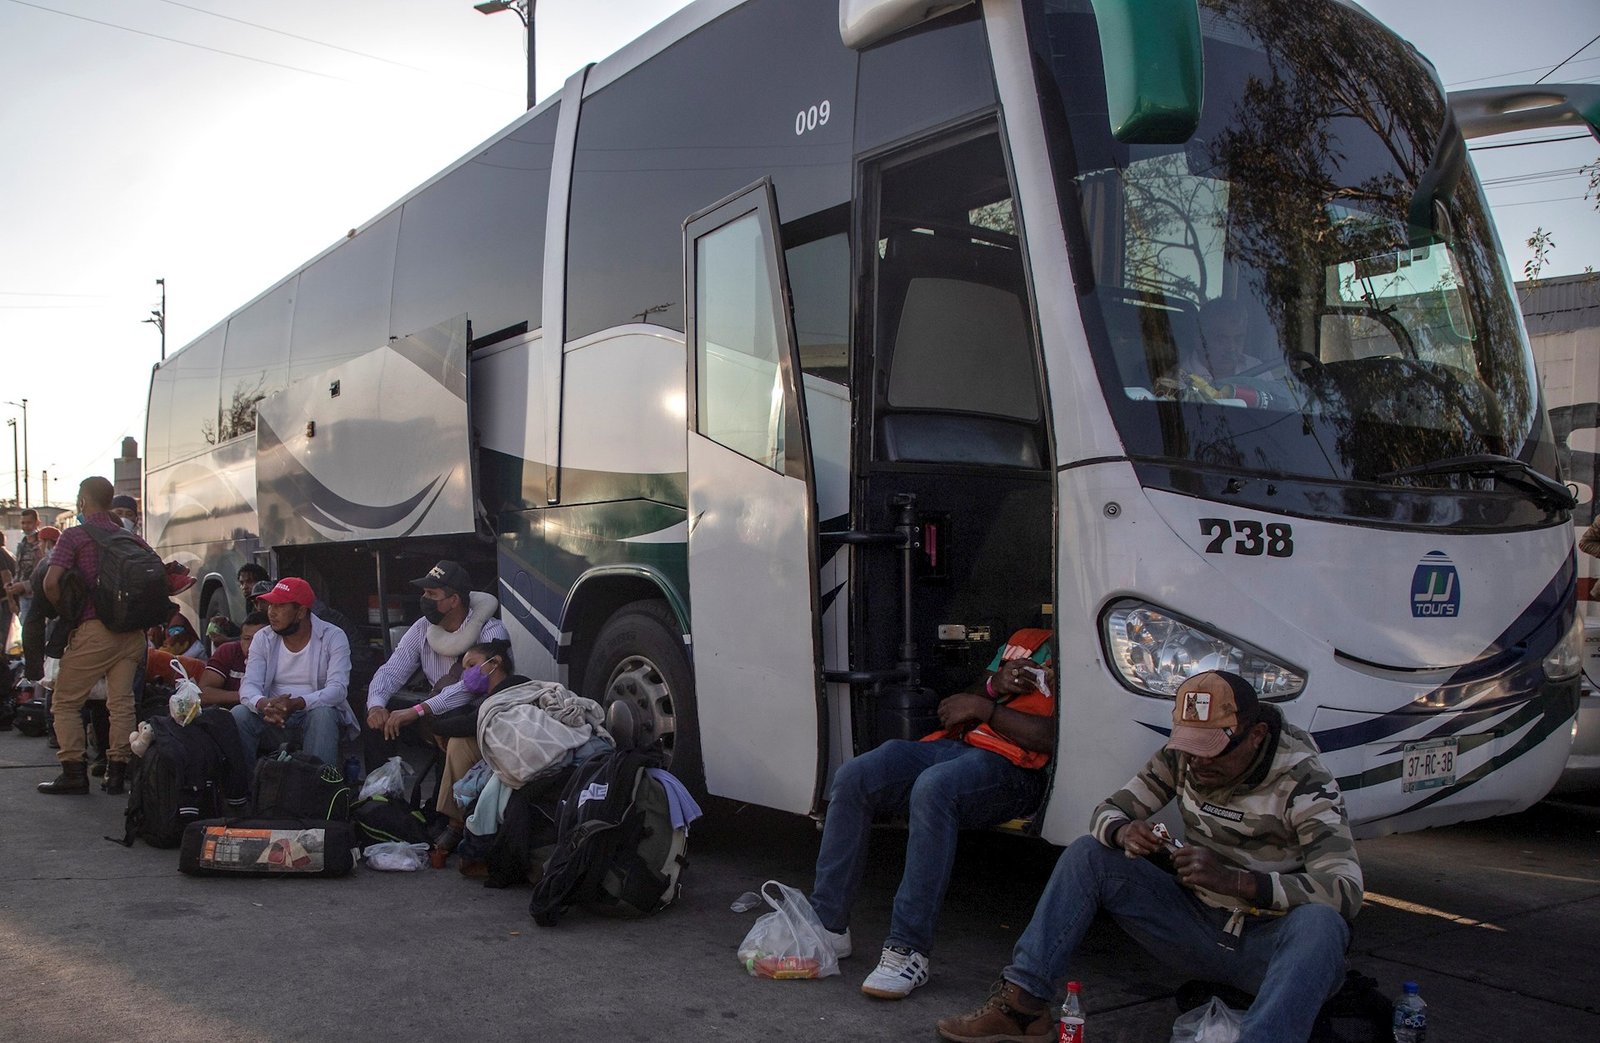 migrantes-ciudad-de-mexico-caravana-3.jpg